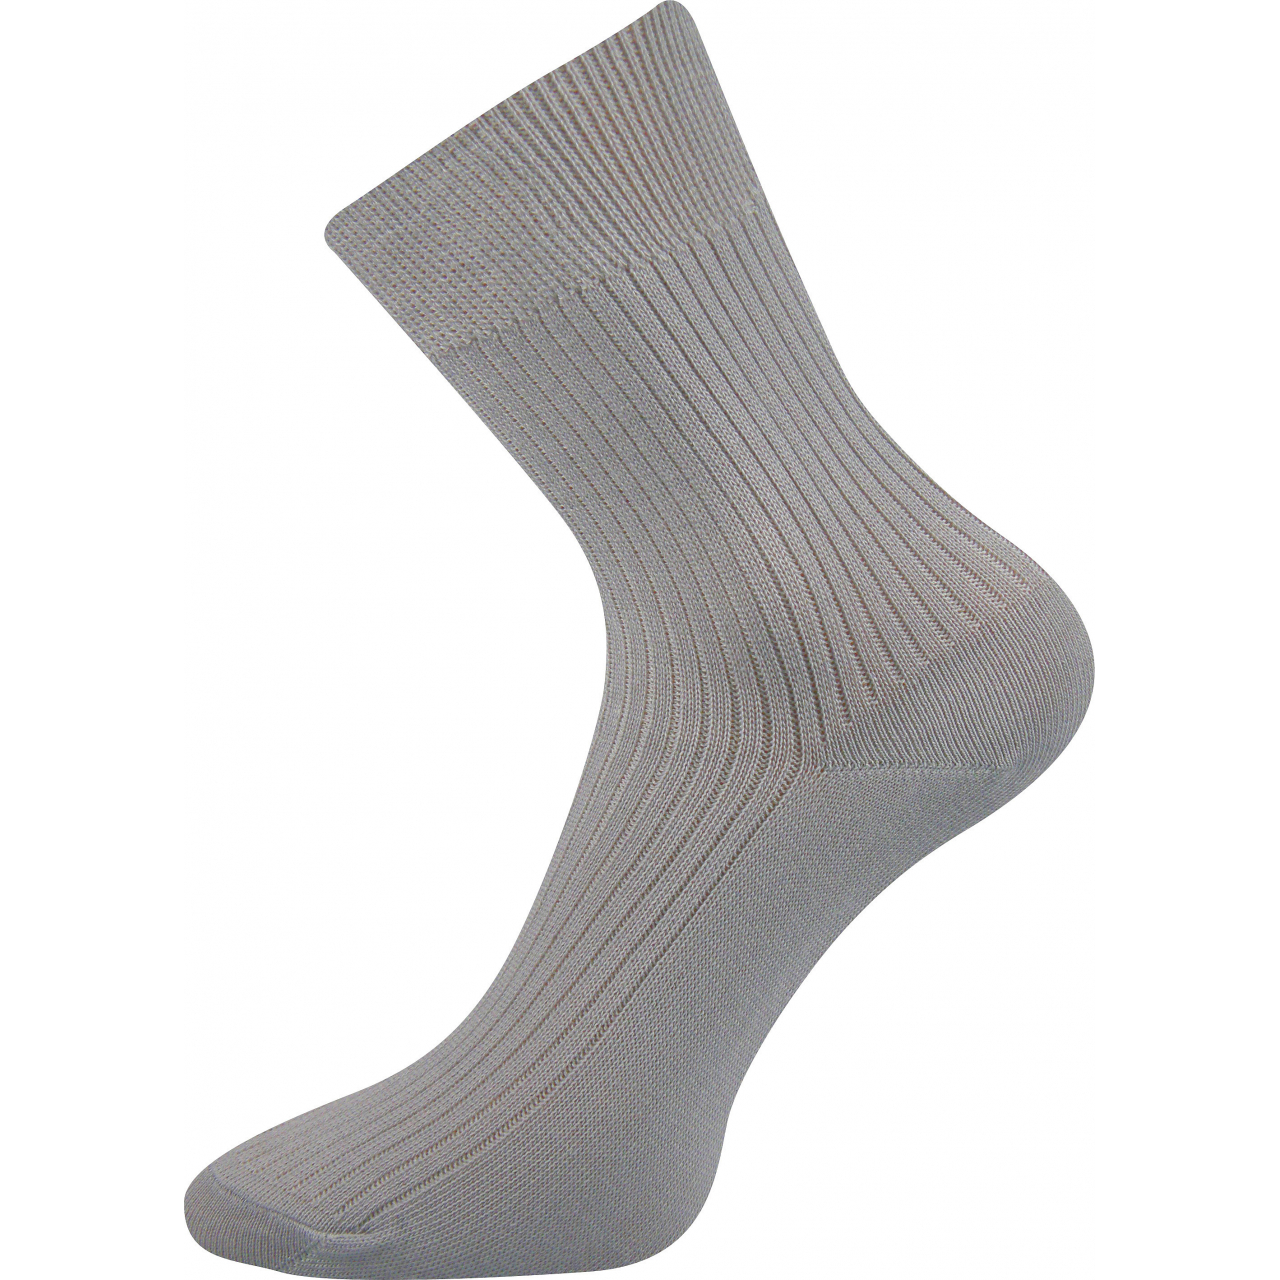 Ponožky tenké Boma Viktor - světle šedé, 46-48